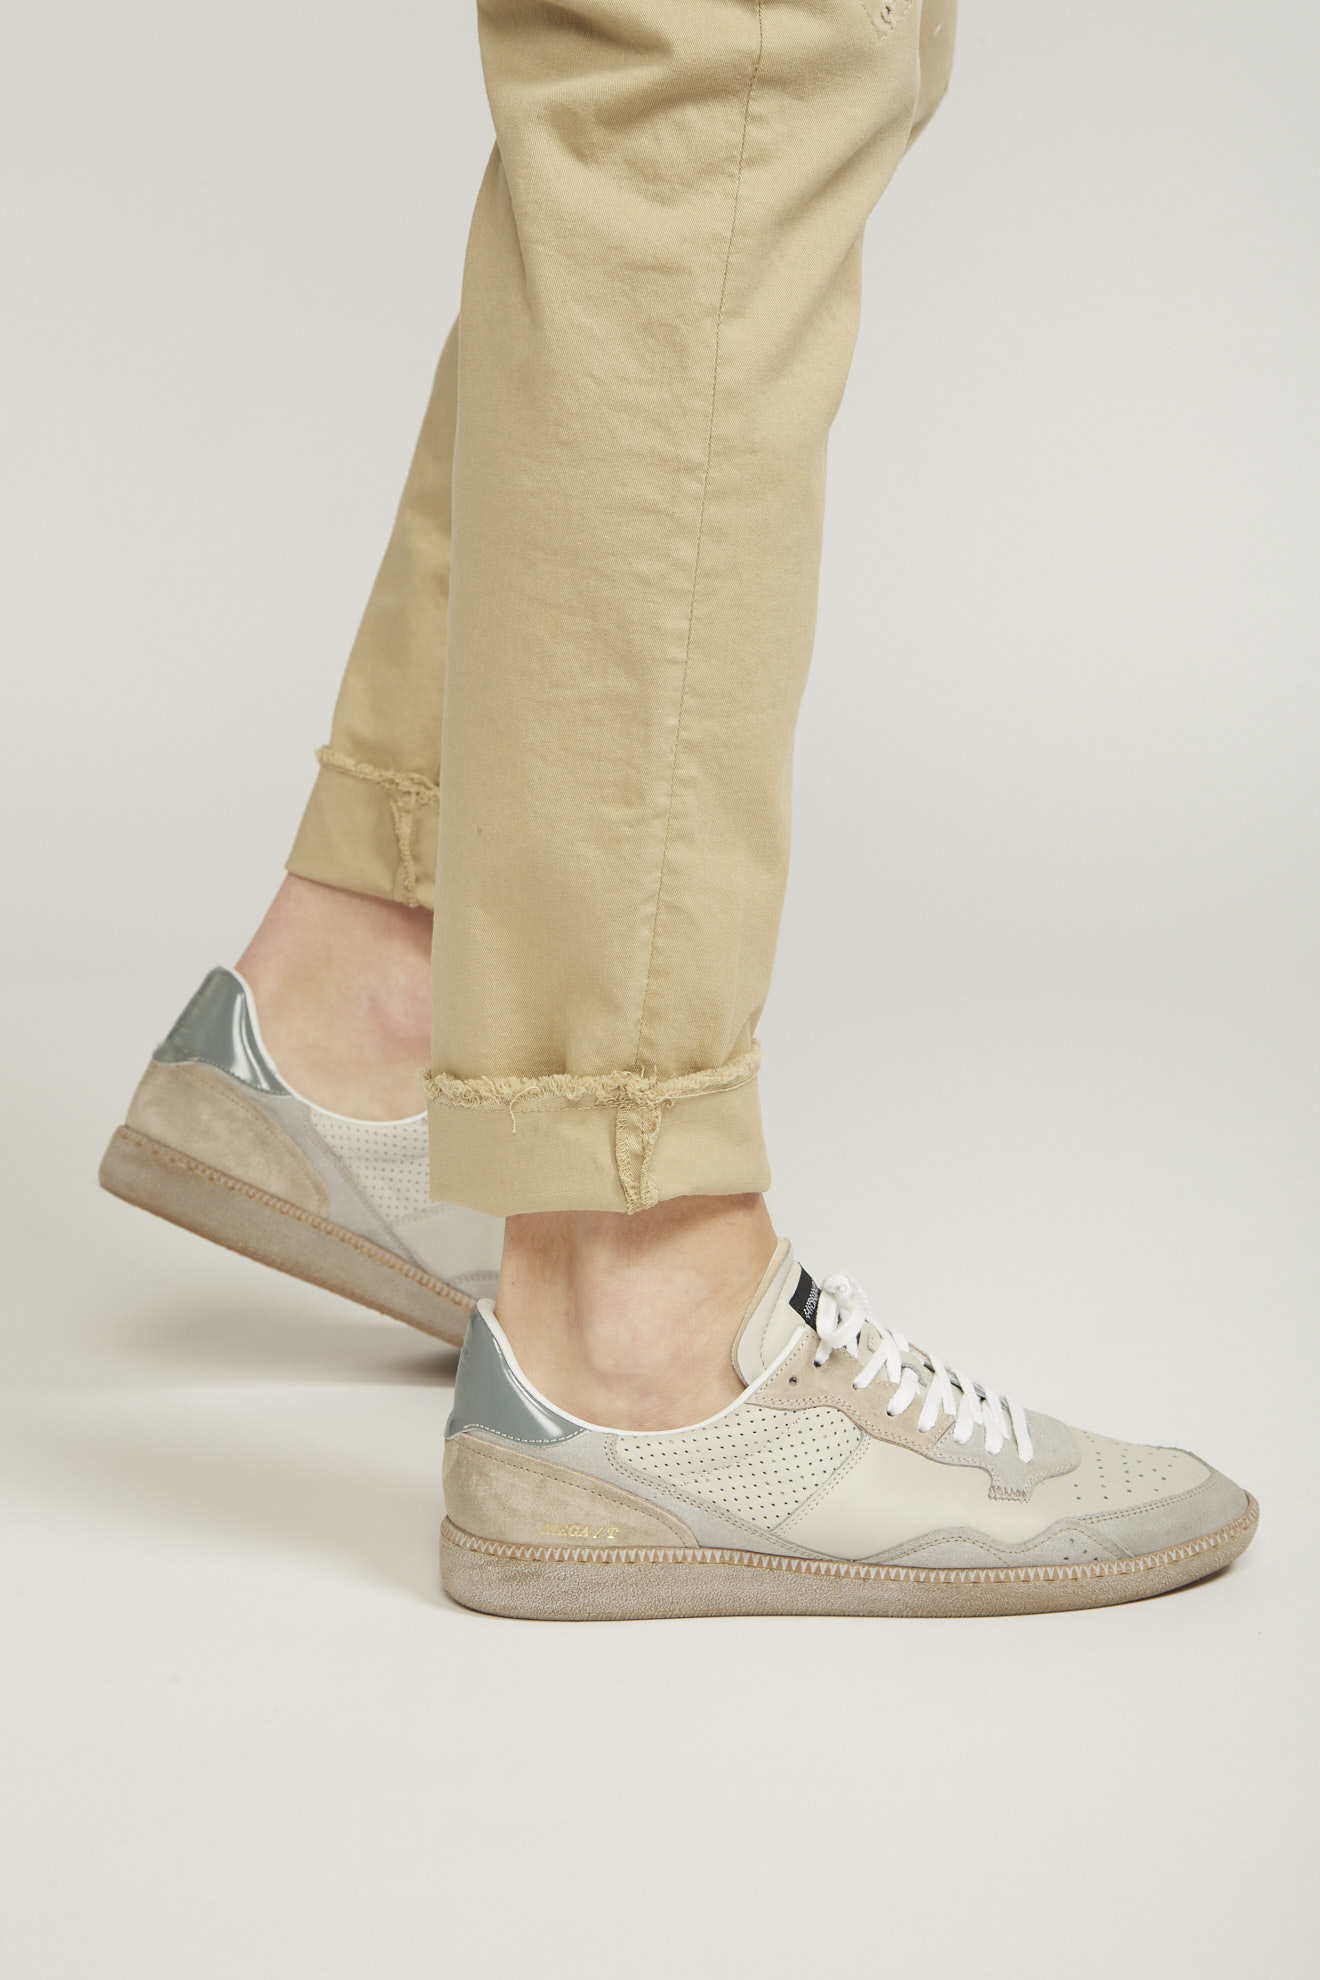 hidnander shoes beige white&grey details leather model side